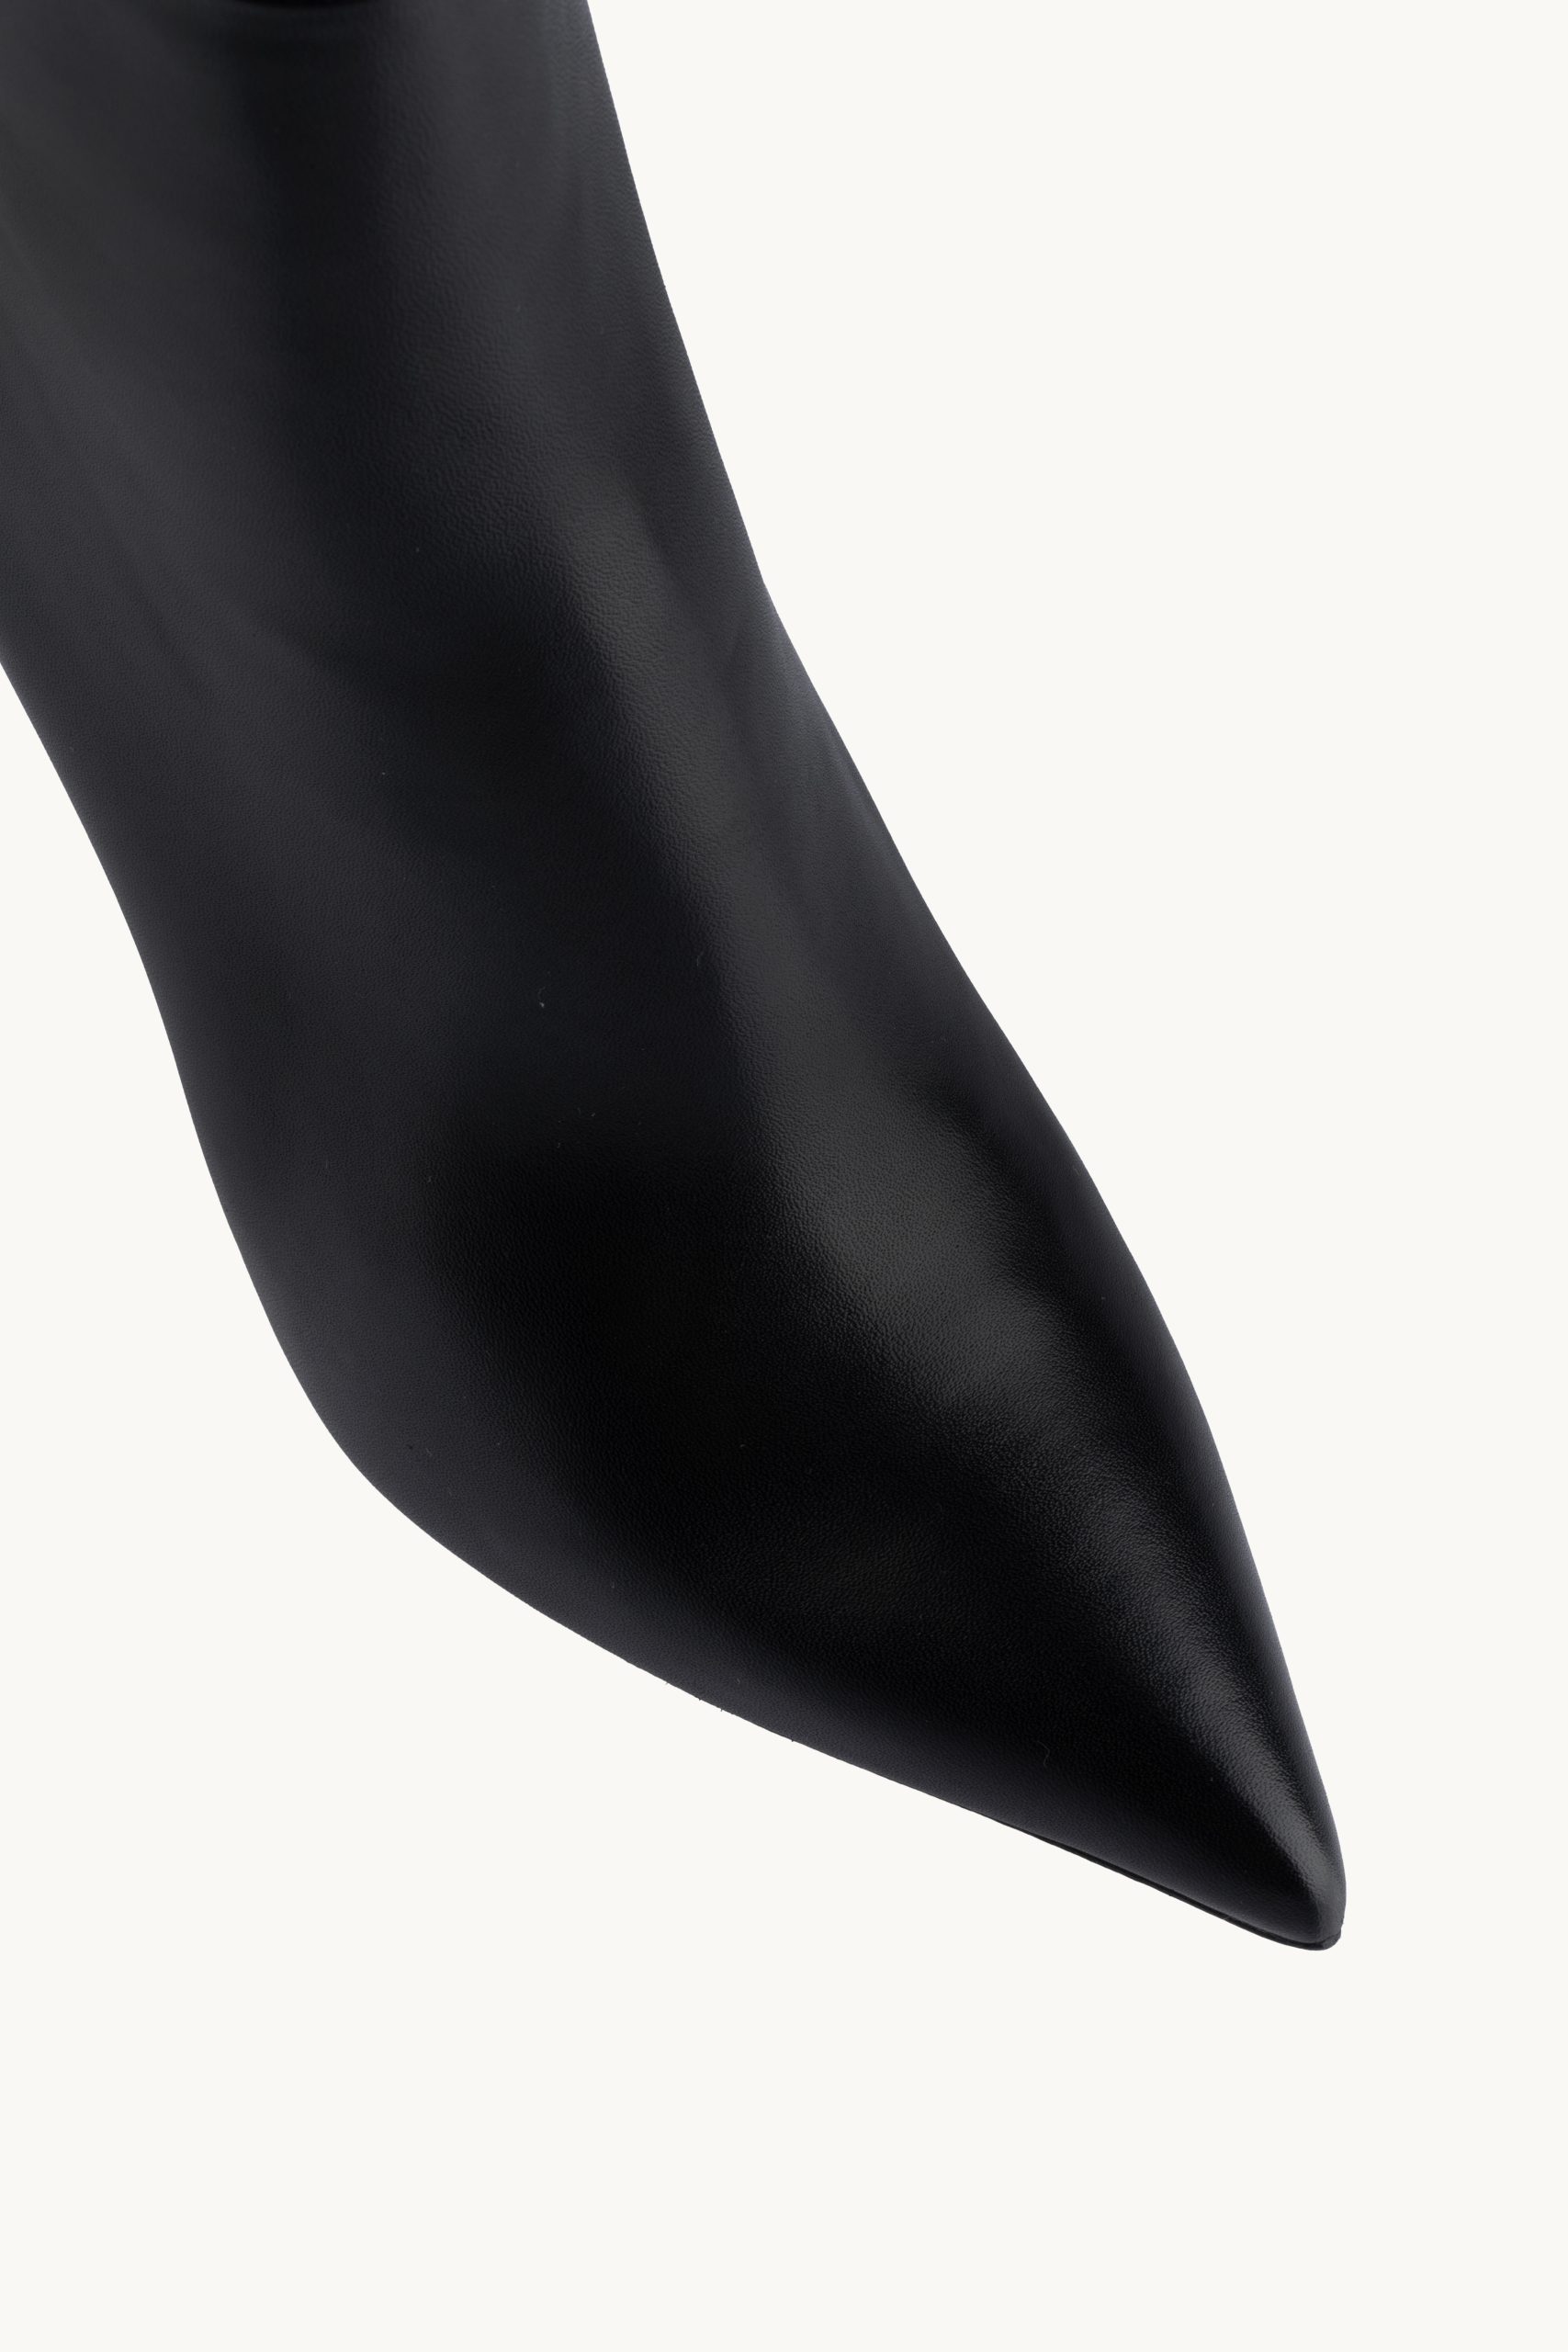 Kratke čižme - Noir Mystique su kratke crne špicaste čizme sa tankom višom štiklom.